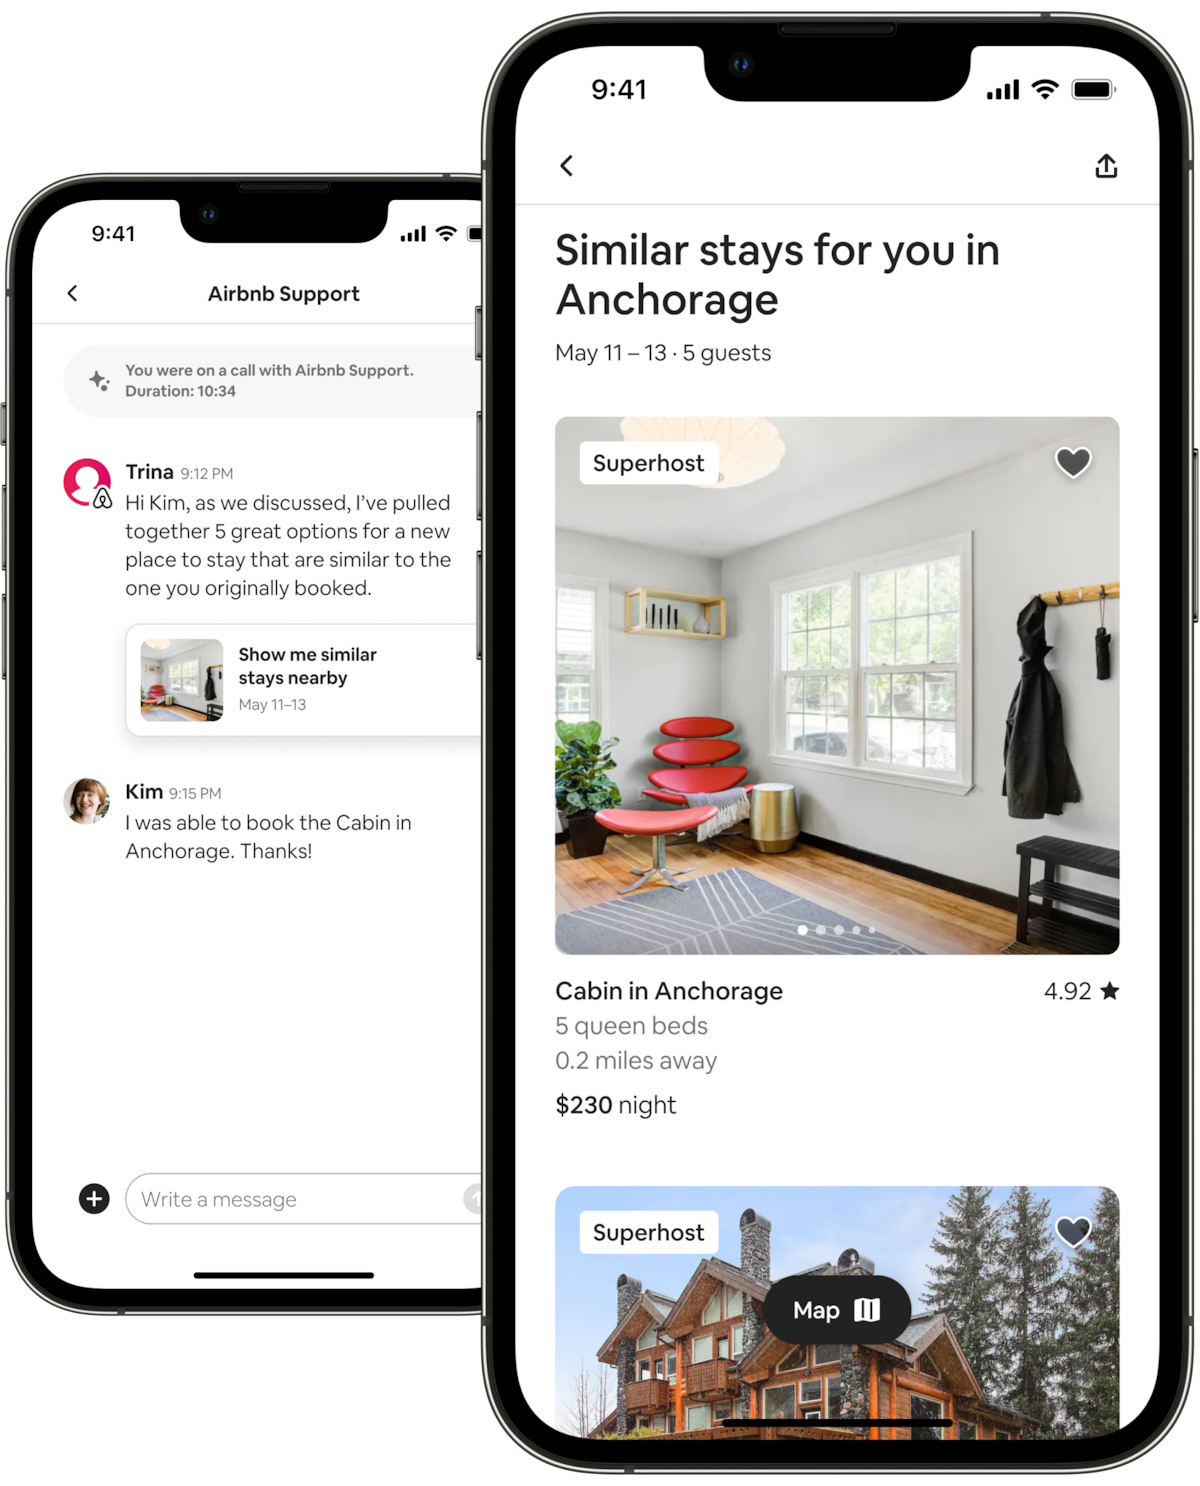 दो मोबाइल फ़ोन एक-दूसरे के आस-पास रखे हैं, बाईं ओर रखा मोबाइल एक Airbnb मेहमान और Airbnb की AirCover टीम के एक सदस्य के बीच टेक्स्ट मैसेज पर हुई बातचीत को दिखा रहा है। टीम की सदस्य मेहमान को बता रही हैं कि उन्हें मेहमान की मूल बुकिंग से मिलती-जुलती 5 नई लिस्टिंग मिल गई हैं। मेहमान का जवाब है कि उन्होंने "केबिन इन एंकरेज" नाम की एक लिस्टिंग बुक कर ली है। दाईं ओर रखे फ़ोन में किसी विशलिस्ट के पहले दो घर दिख रहे हैं। पहली फ़ोटो एंकरेज, अलास्का के एक लुभावने केबिन की है, जिसके लिविंग रूम में धूप बिखरी हुई है। अगली लिस्टिंग का सबसे ऊपरी हिस्सा भी देखा जा सकता है।